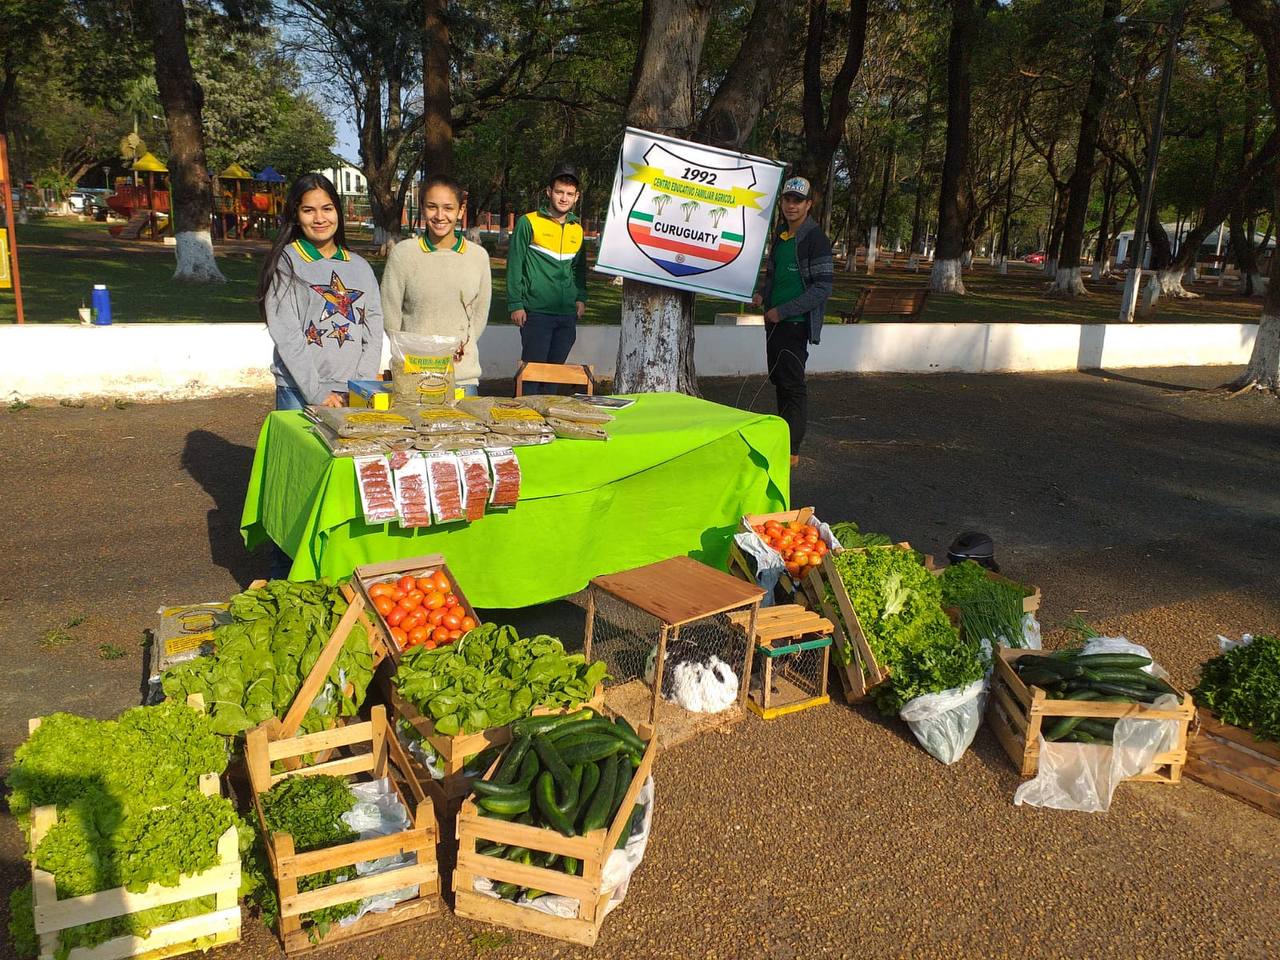 Vier Jugendliche stehen vor einem Stand mit Gemüse, zwei von den Jugendlichen stehen neben der Fane der Schule im Hintergrund